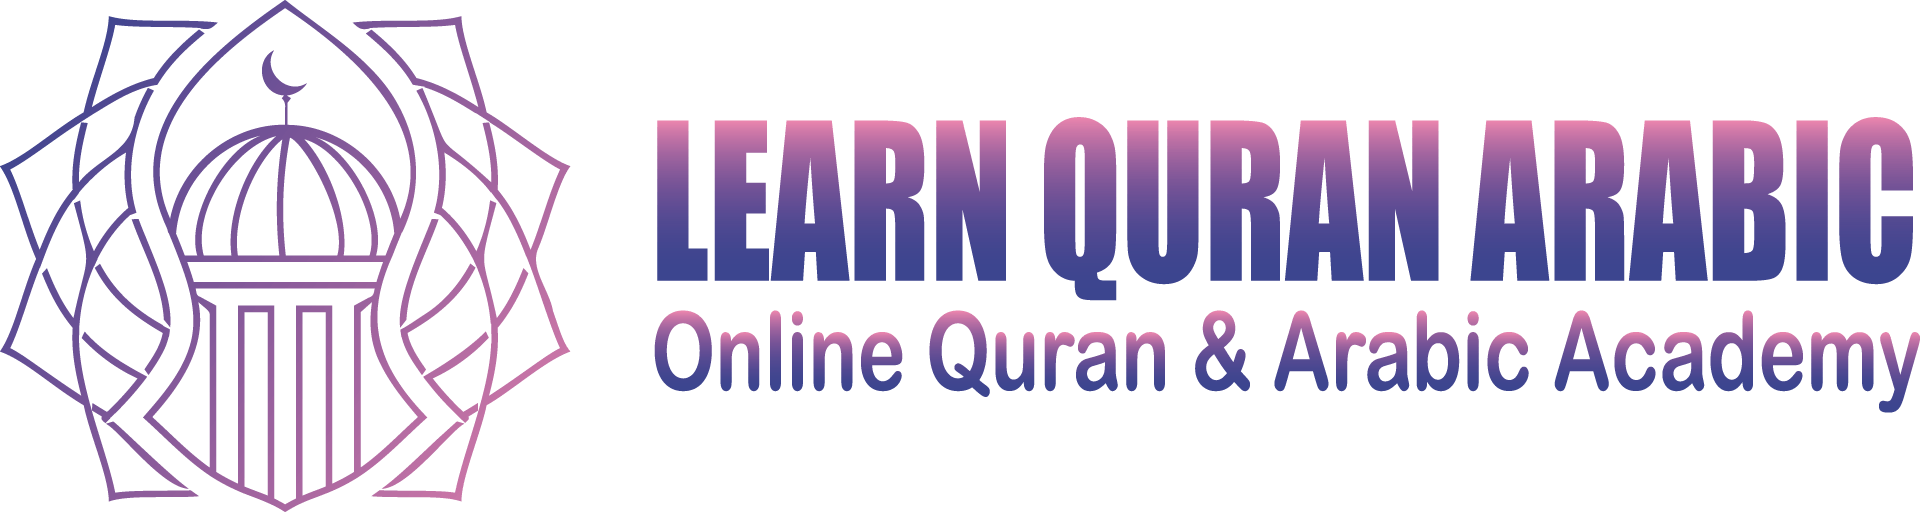 Learn Quran & Arabic Academy